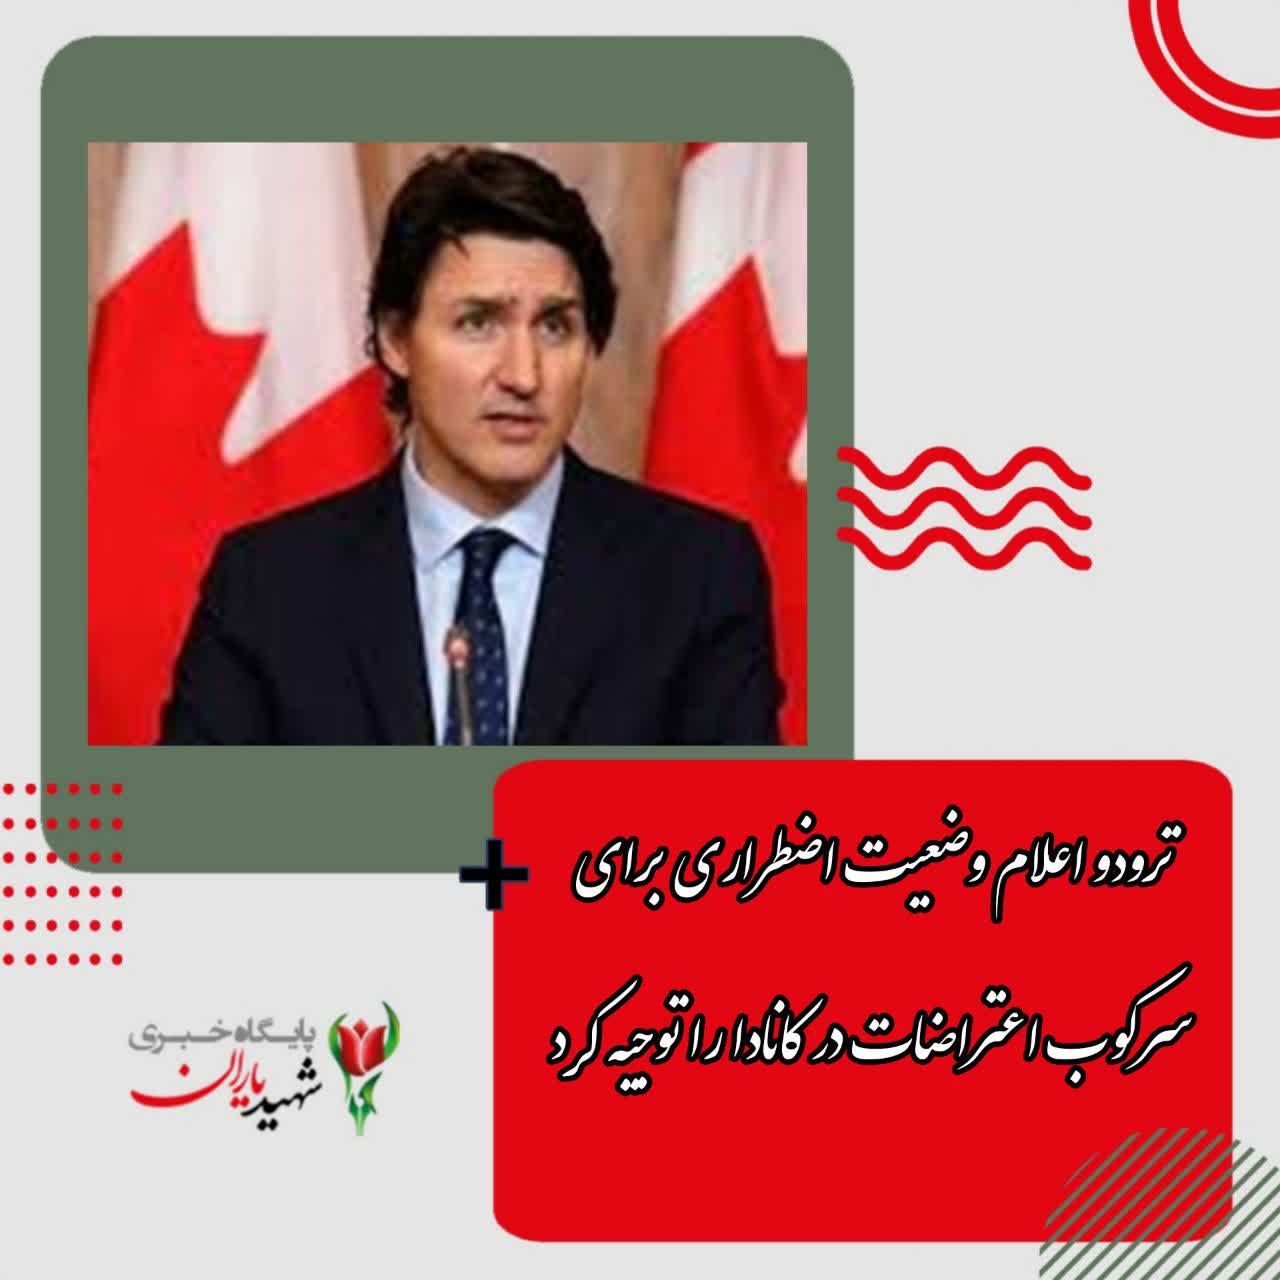 ترودو اعلام وضعیت اضطراری برای سرکوب اعتراضات در کانادا را توجیه کرد